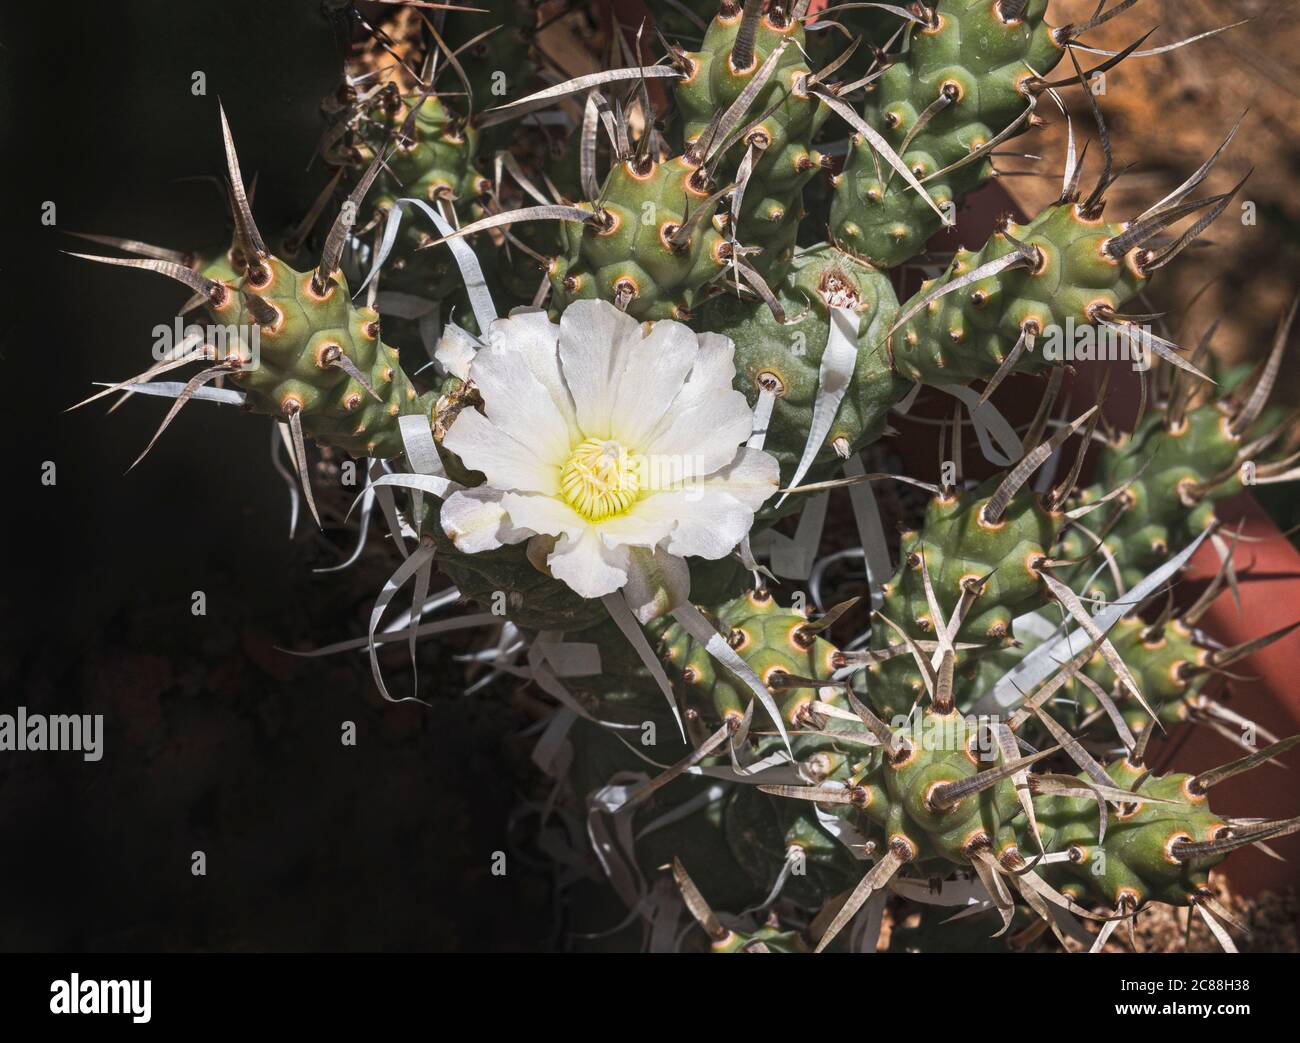 Spitze einer Papierrücken Cholla Kaktus Pflanze mit einer einzigen weißen Blume von papierigen Stacheln und verzweigten Segmenten umgeben Stockfoto